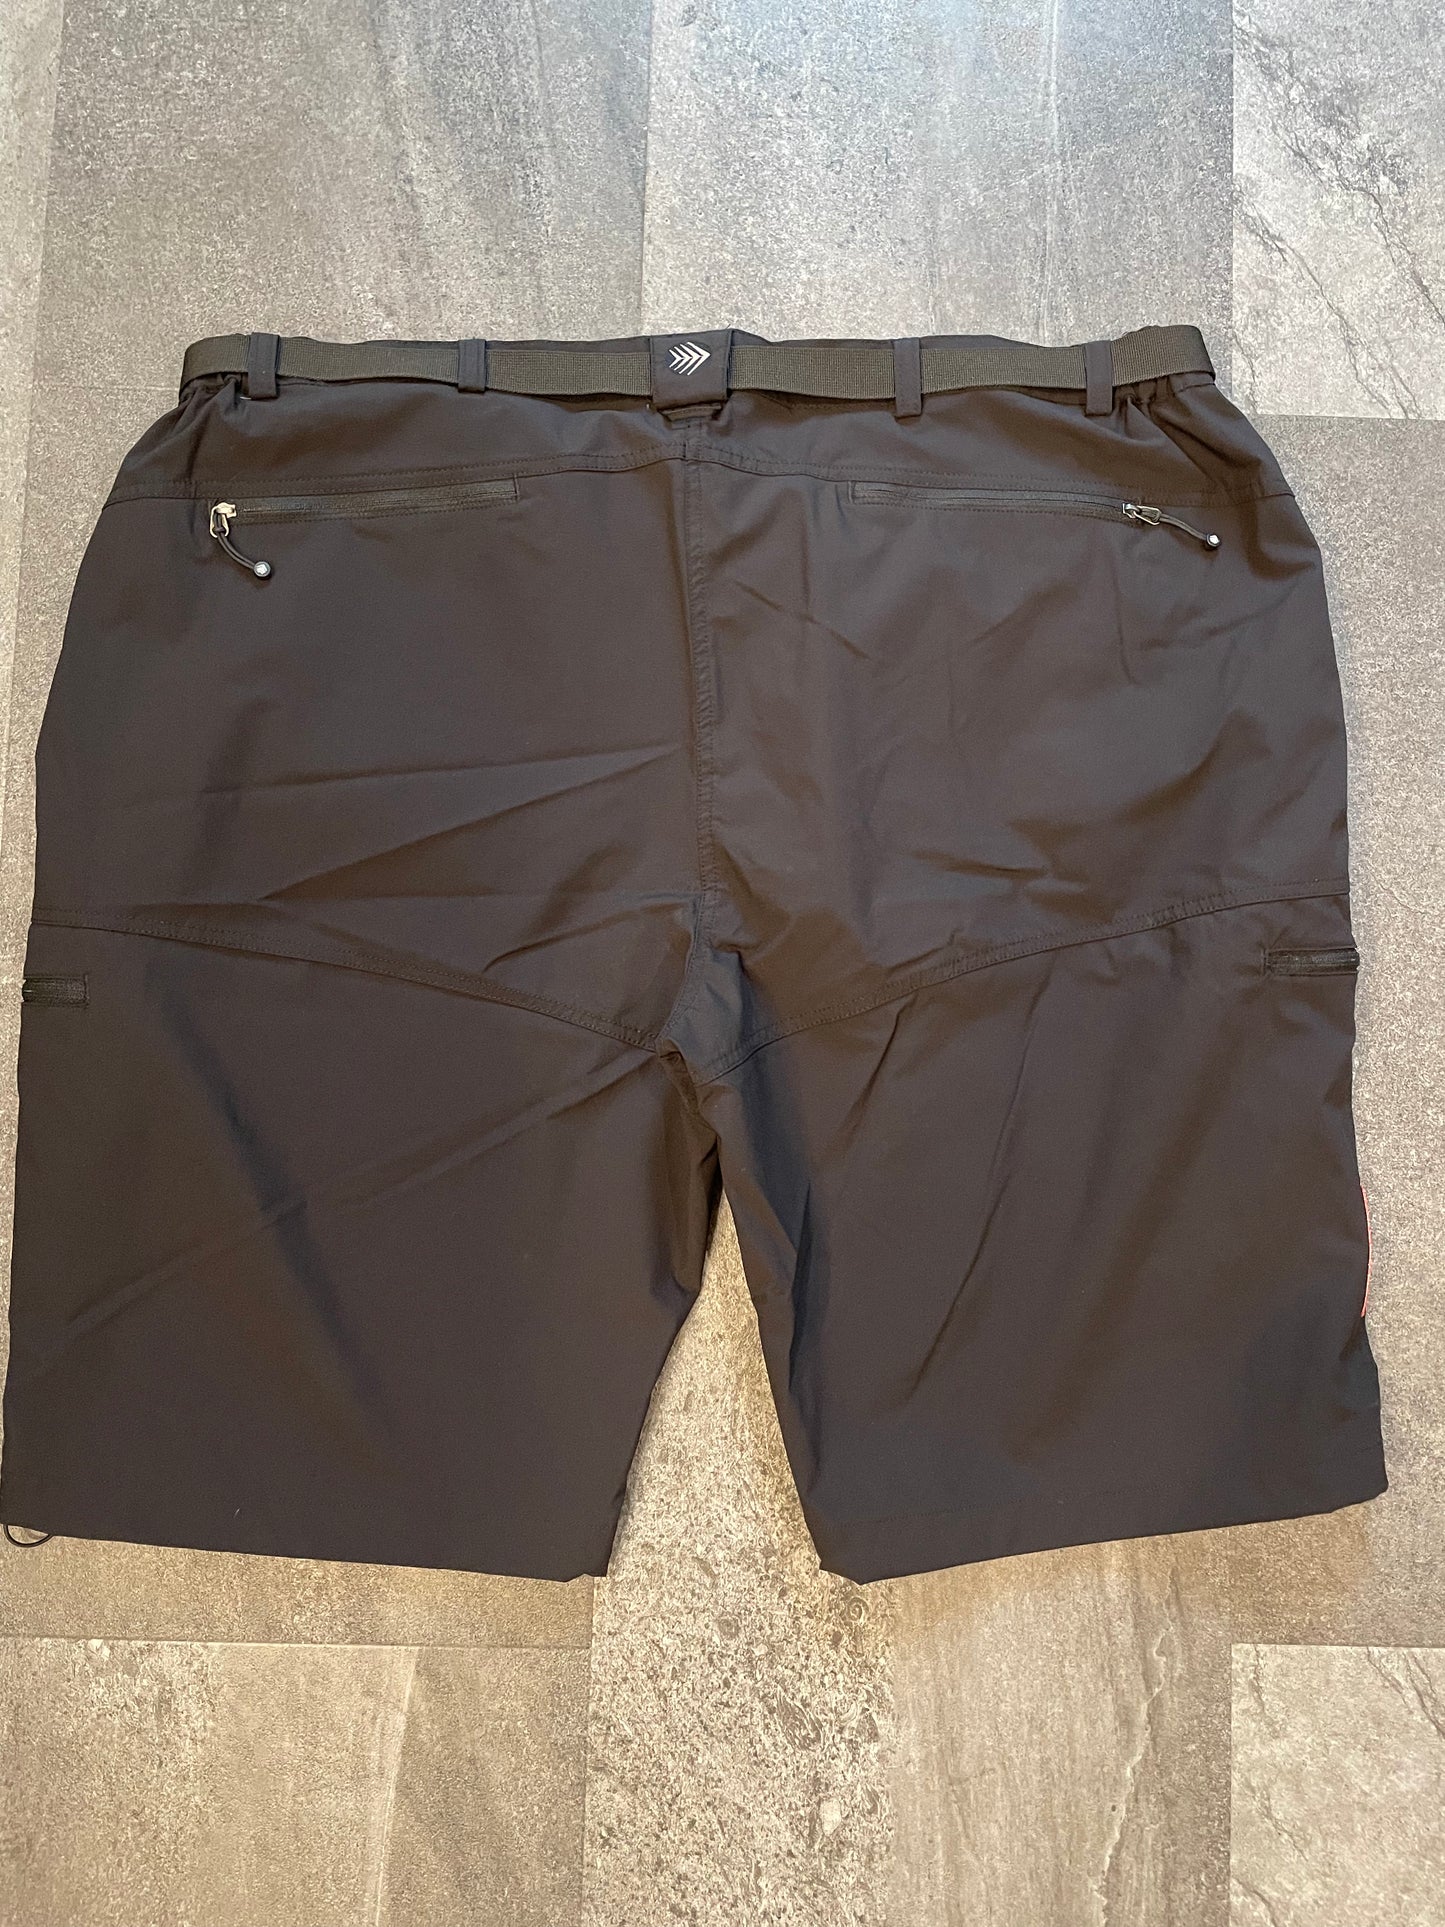 Aero Tech Black Urban Cargo Shorts (3XL)